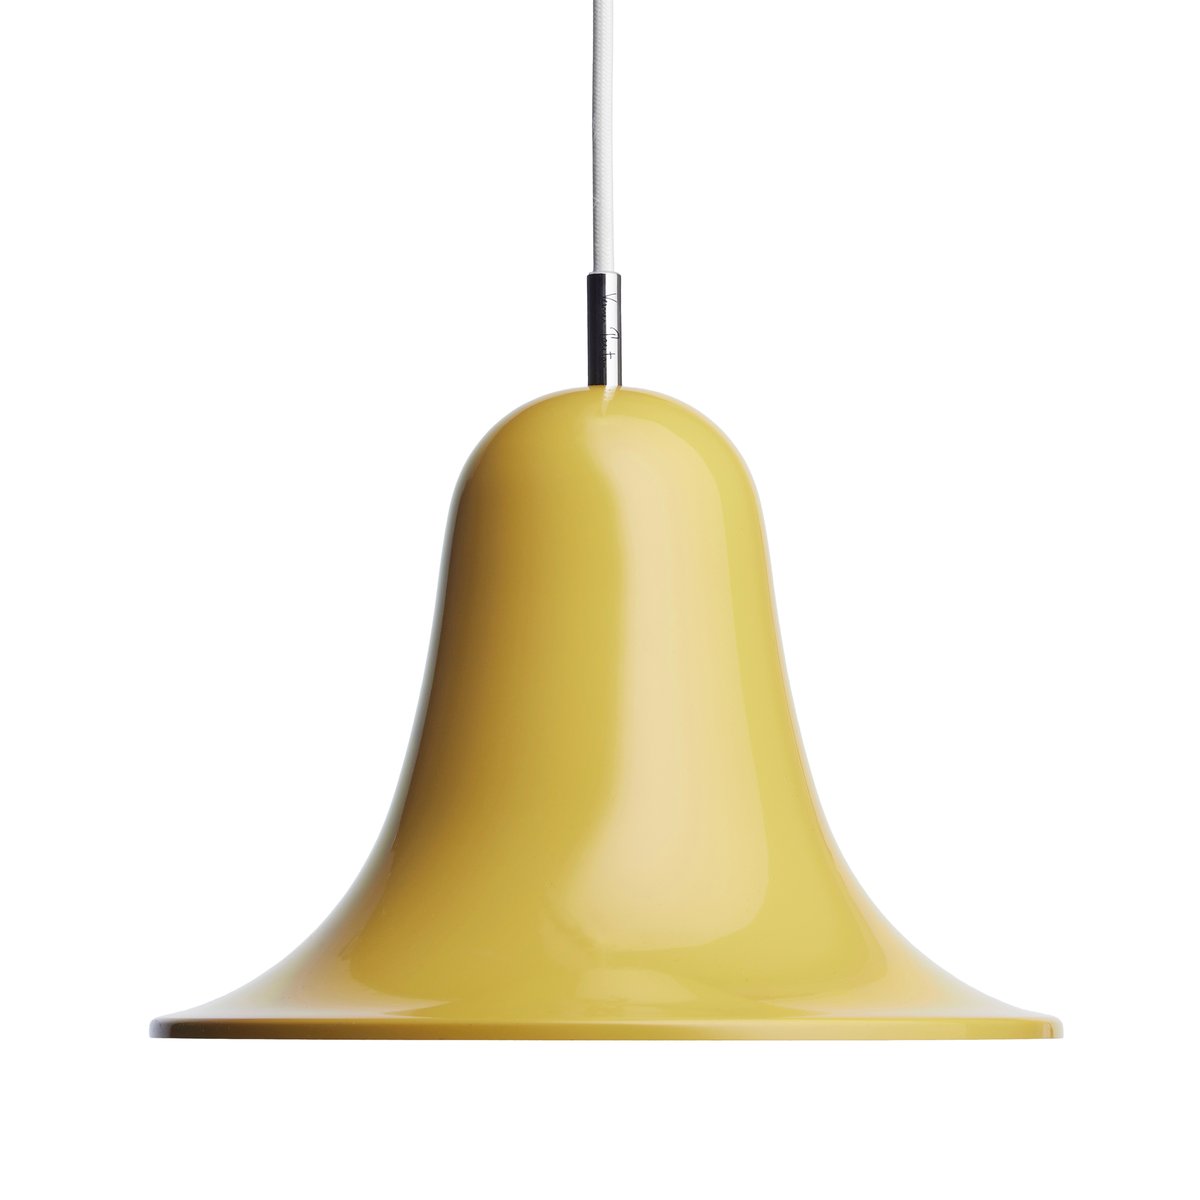 Verpan Pantop hanglamp Ø23 cm Warm yellow